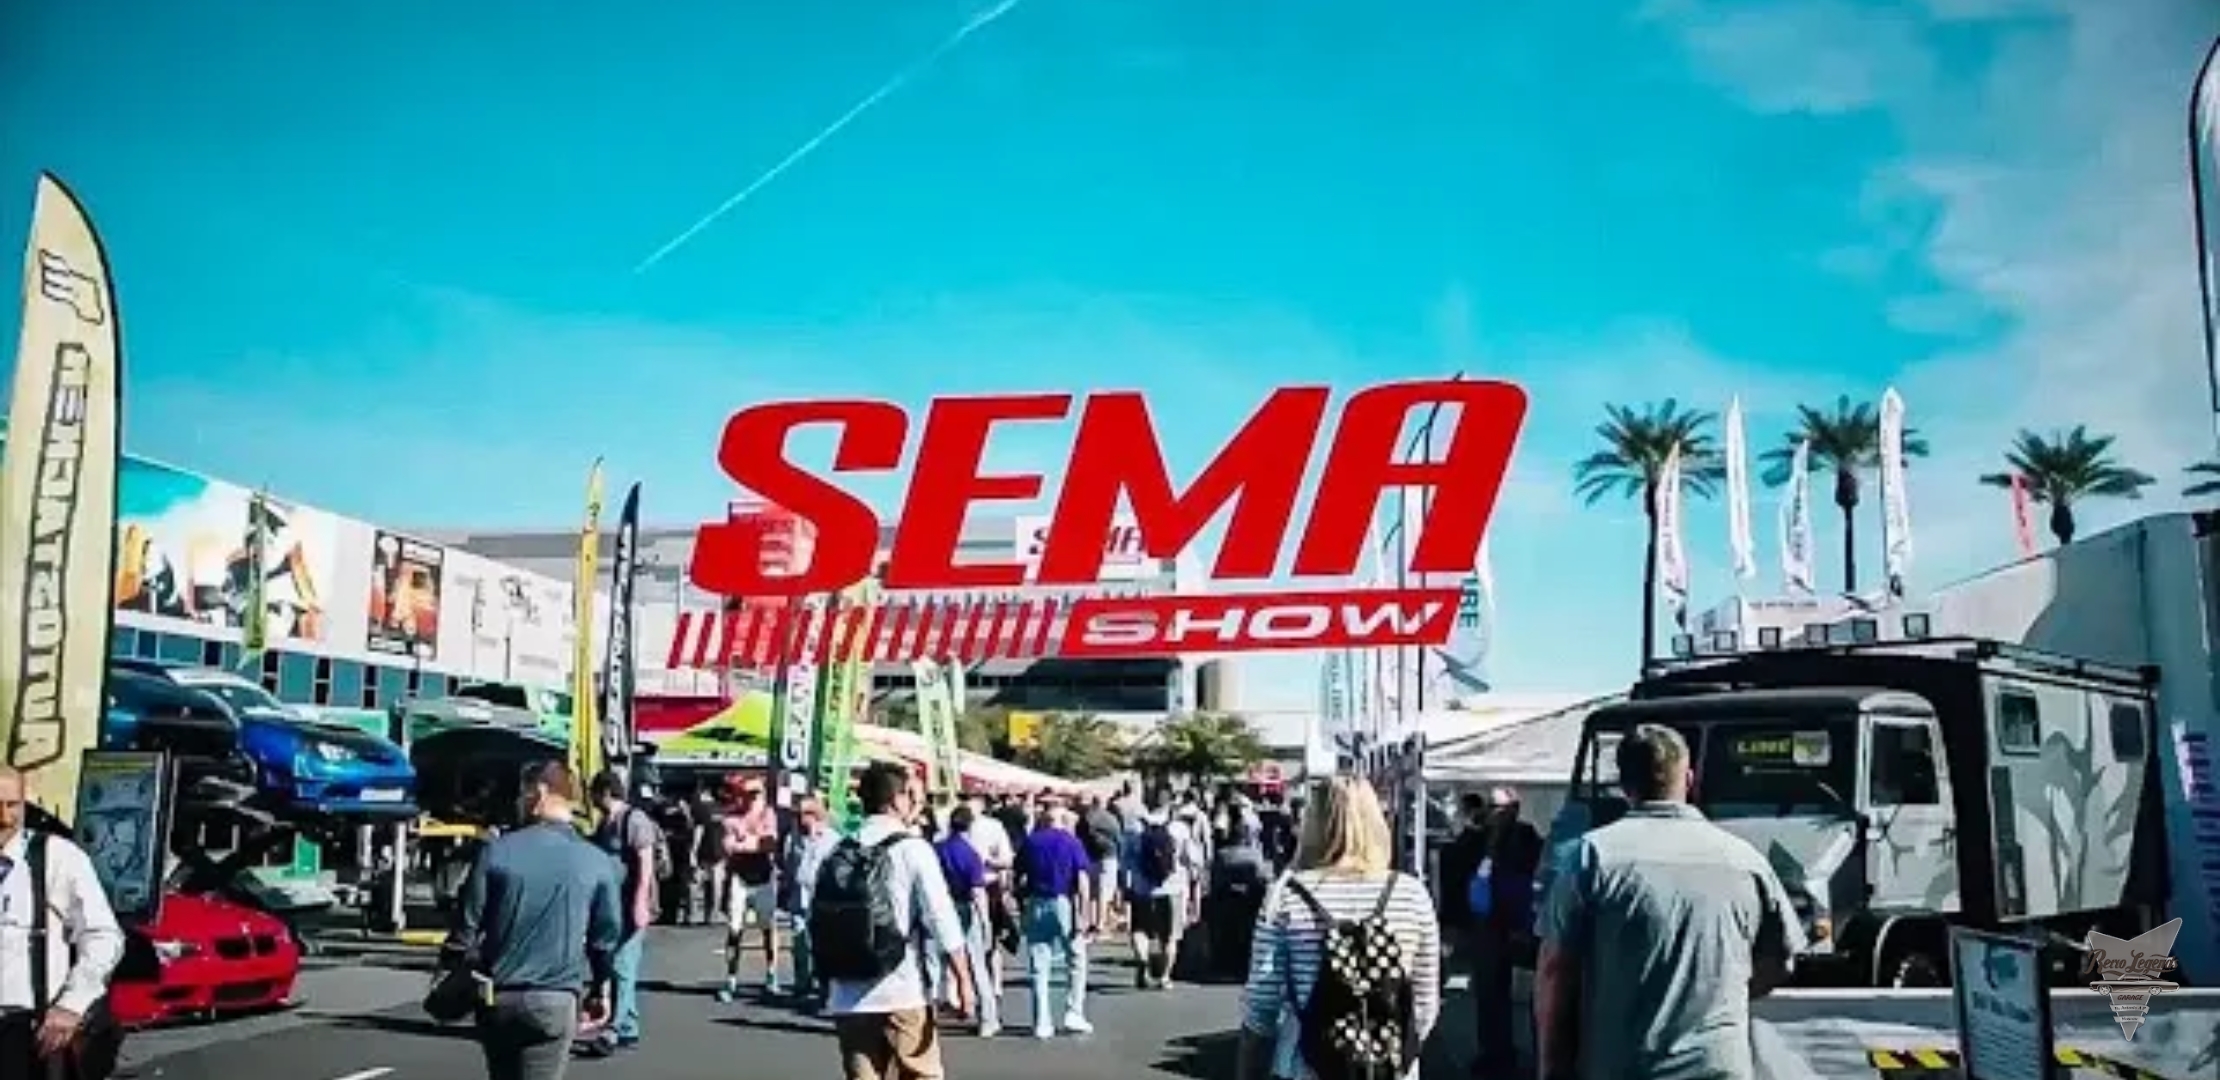 Анонс видео-теста SEMA 2019! Лучшее Событие Автомобильной Индустрии!